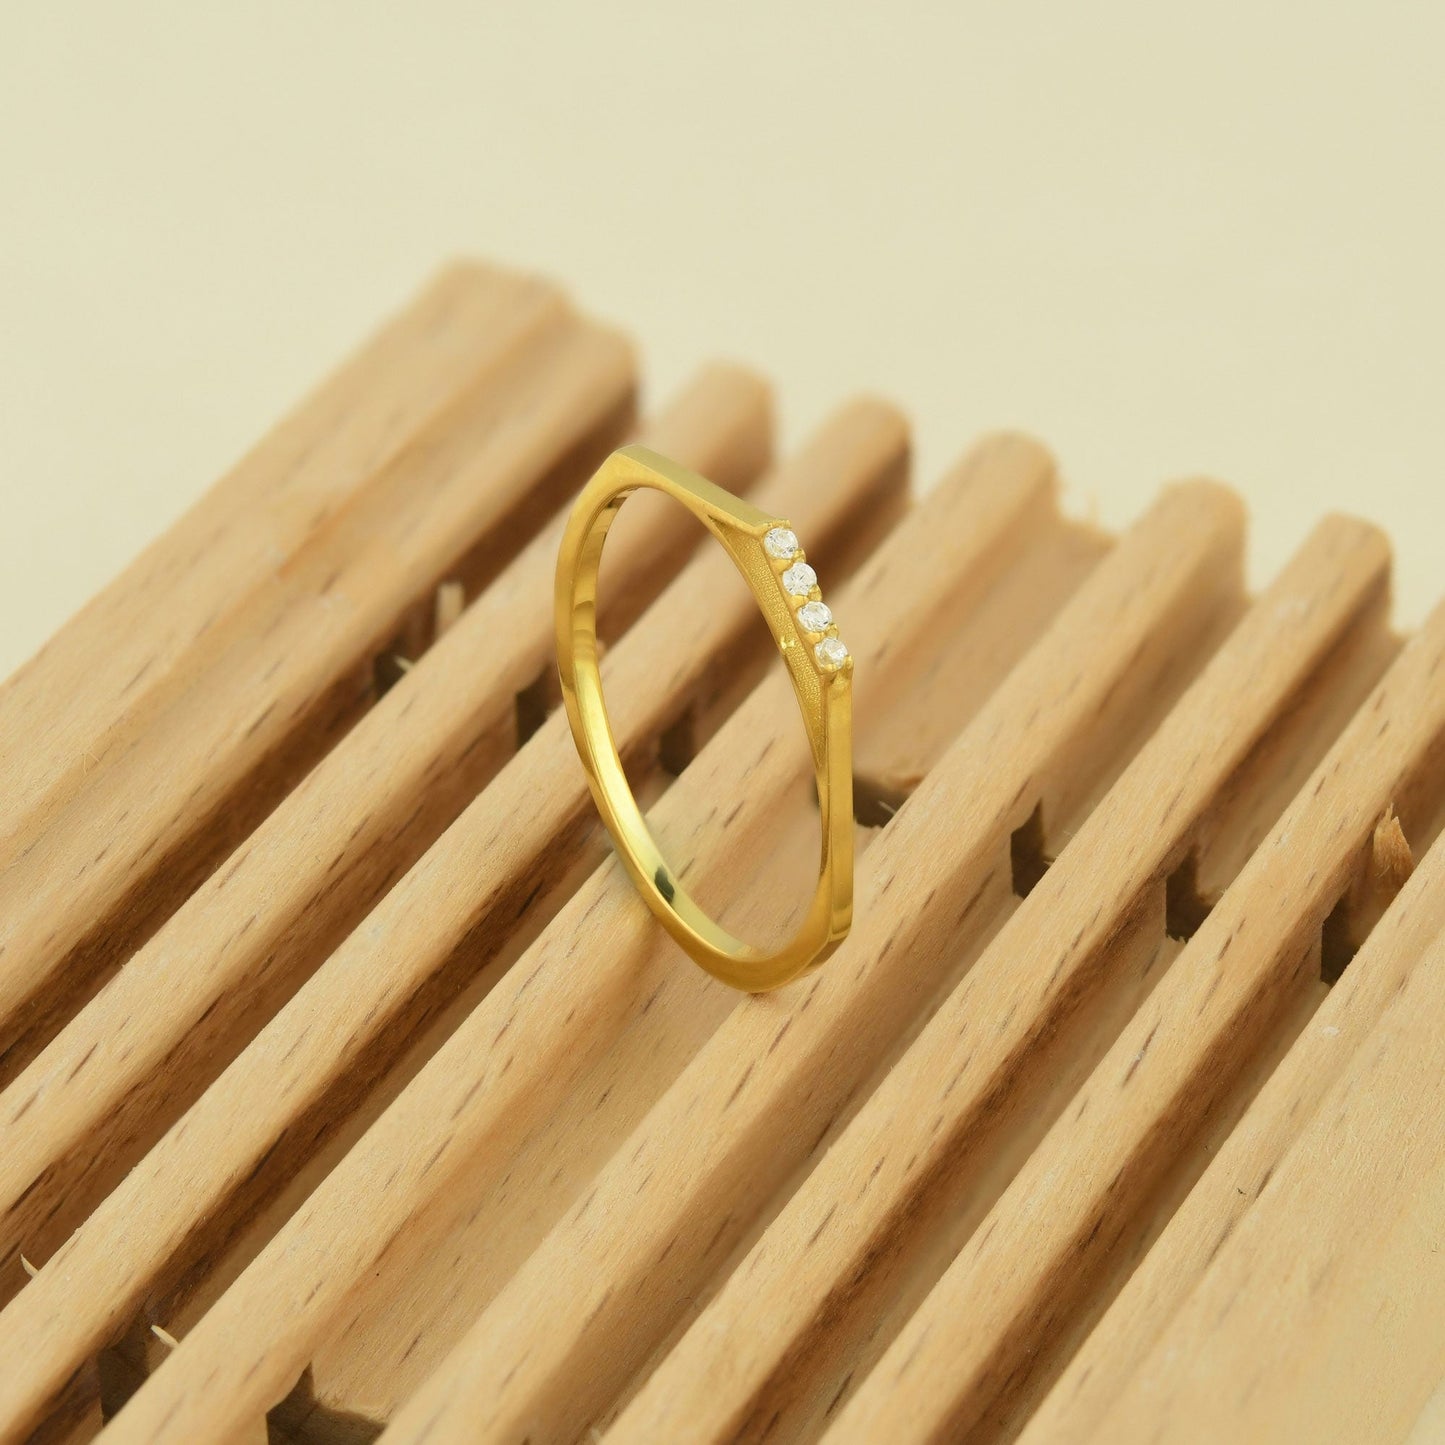 10K Gold Mini Stack Ring - 2S115